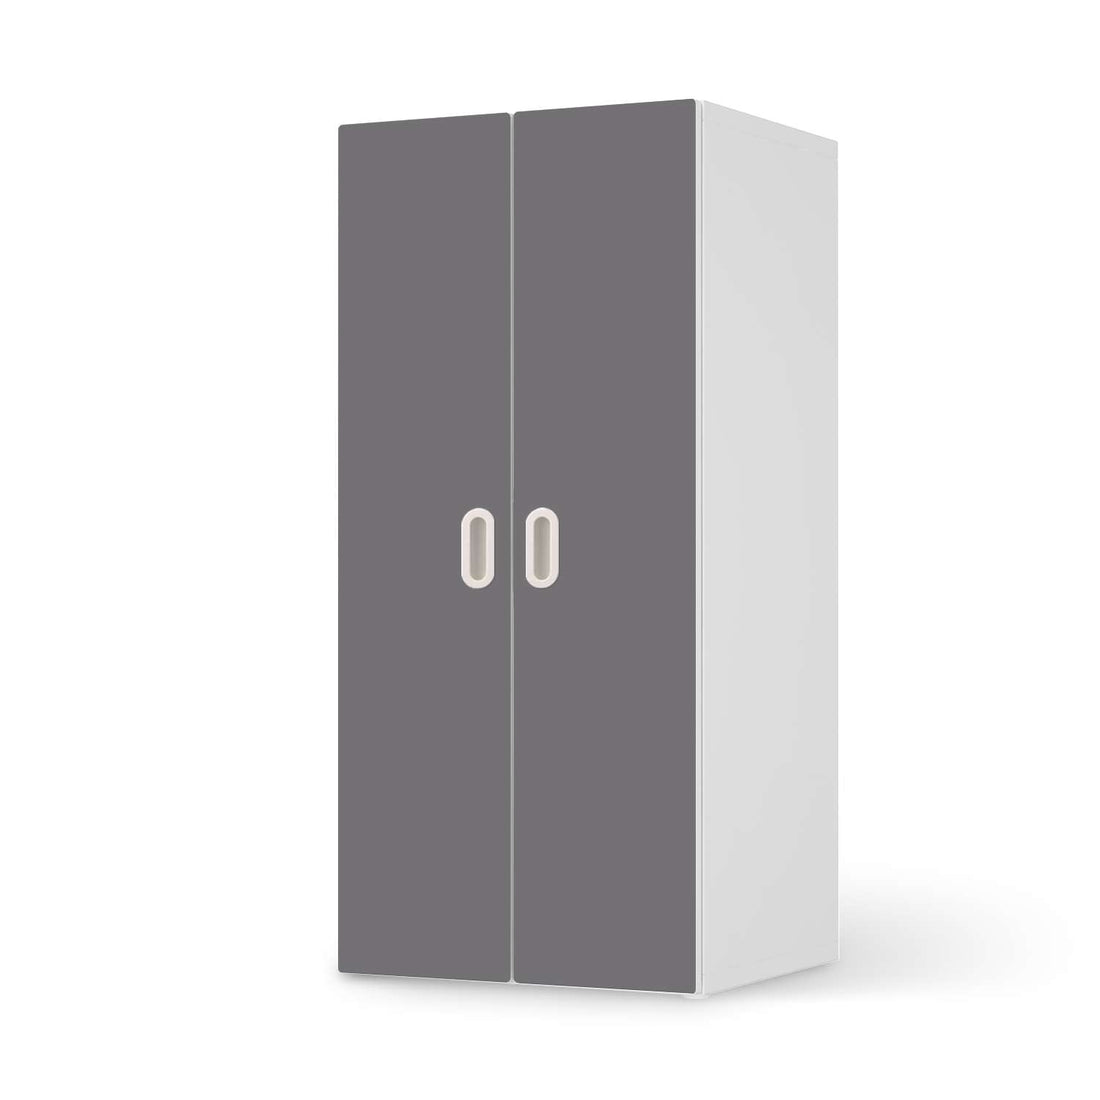 Möbelfolie Grau Light - IKEA Stuva / Fritids Schrank - 2 große Türen  - weiss